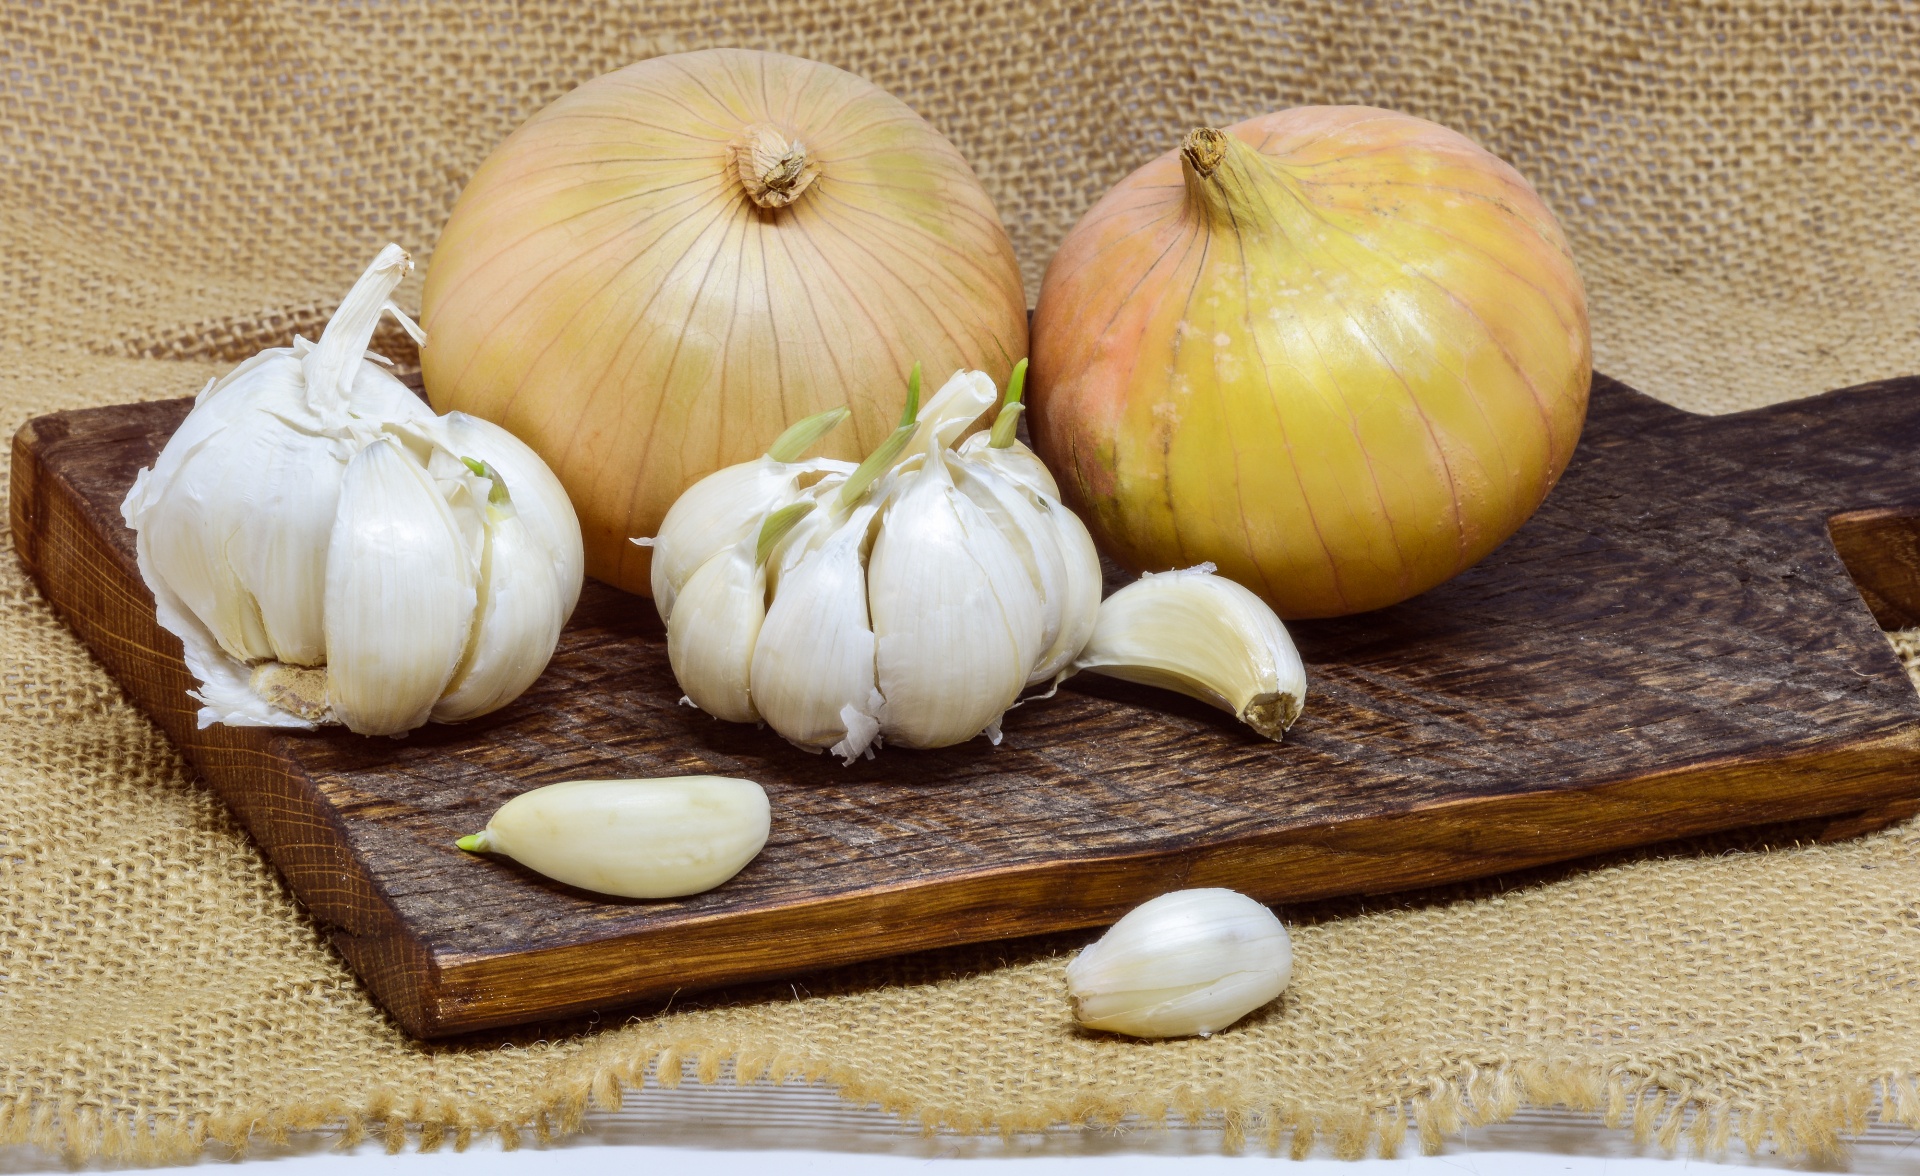 Onion-Garlic Bubble Bread